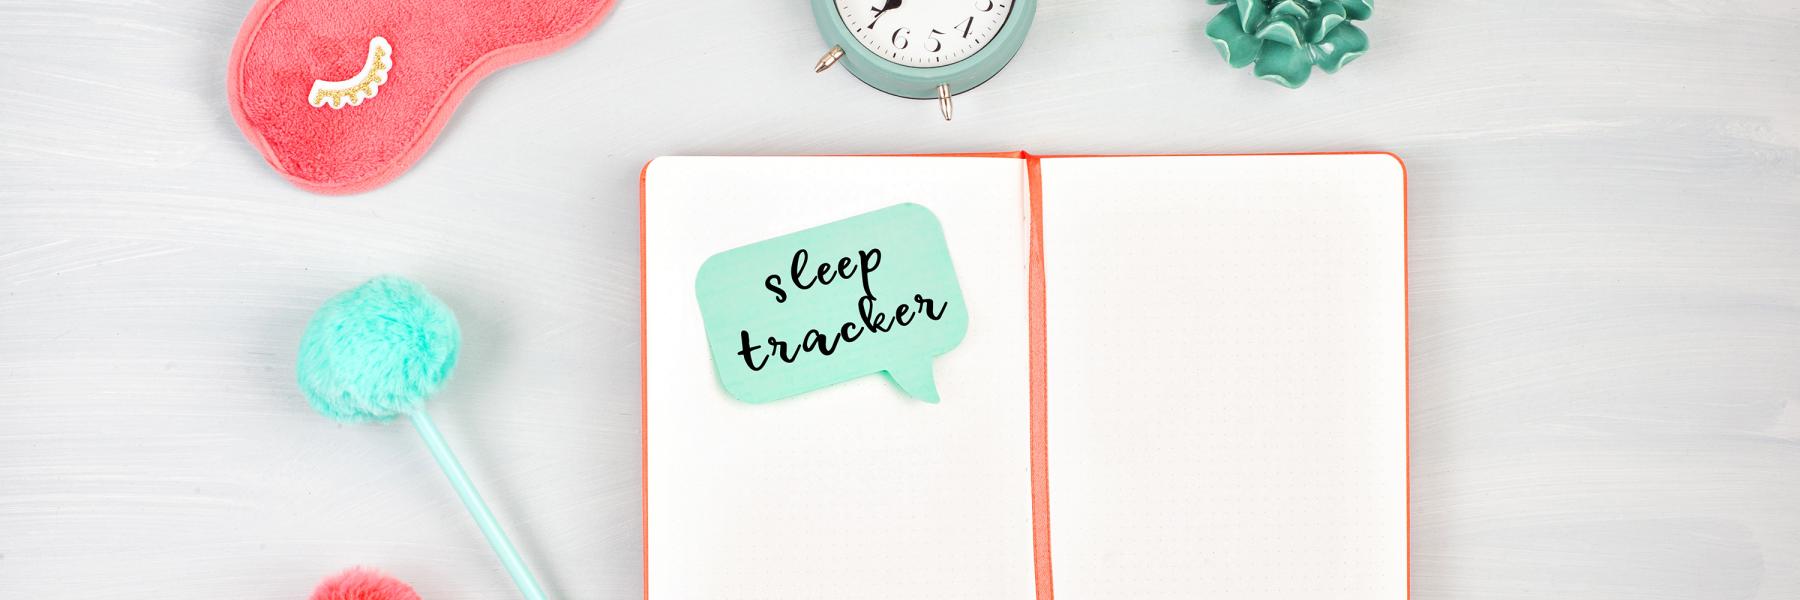 Sleep tracker diary